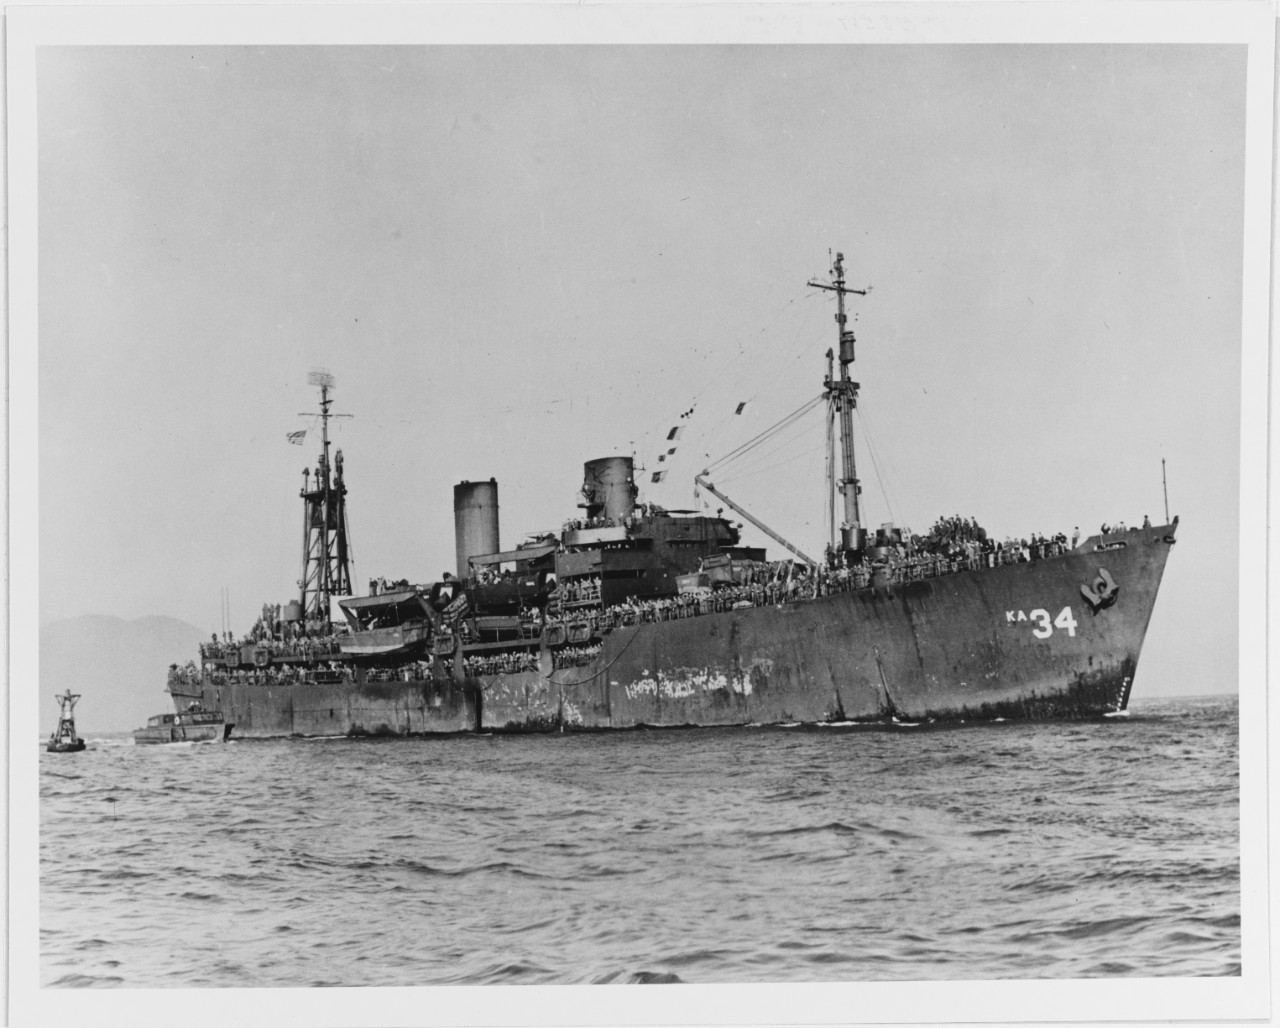 USS PAMINA (AKA-34)